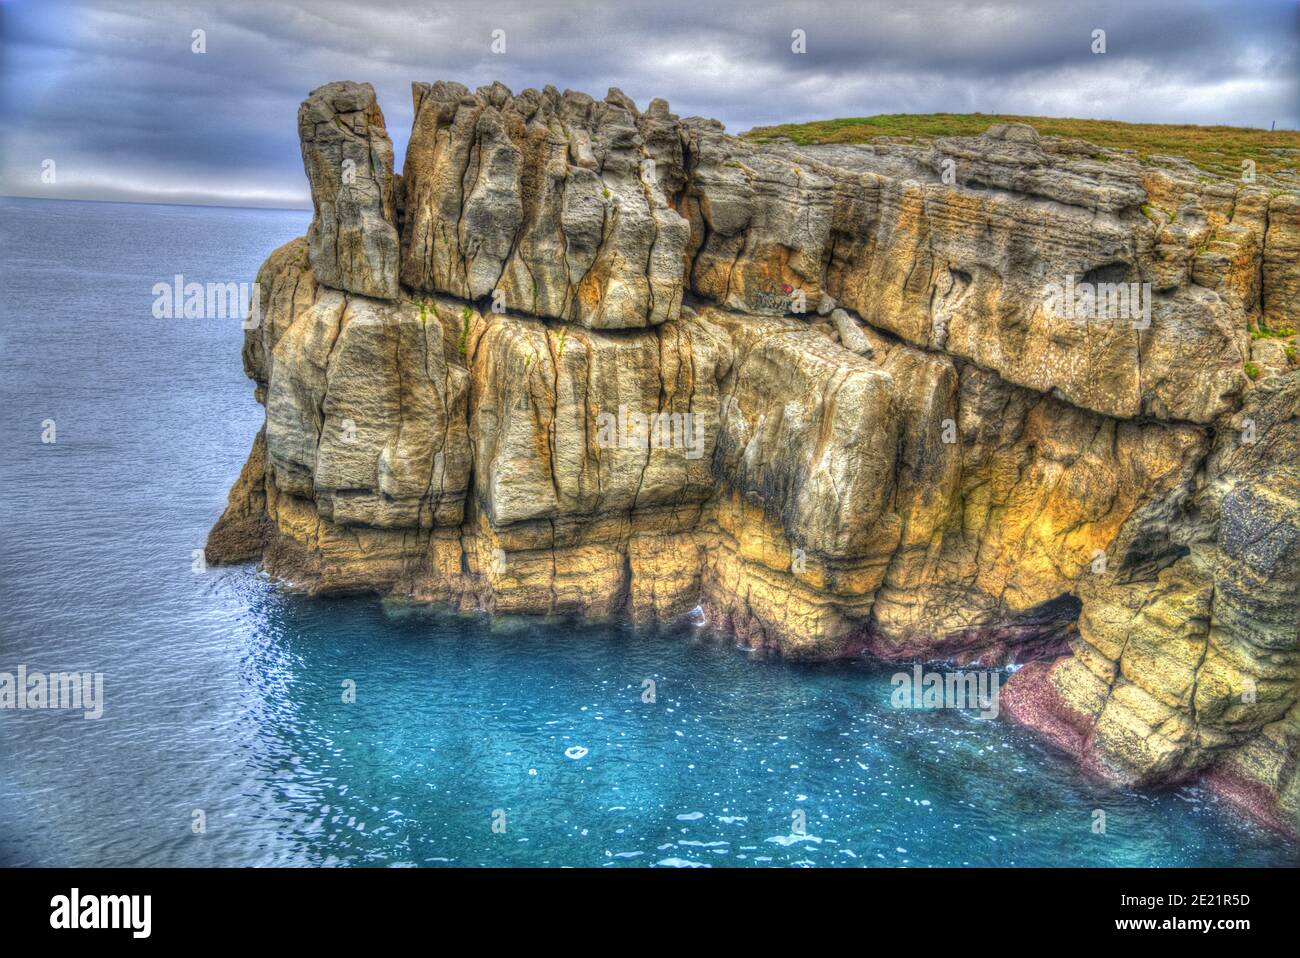 Fotografia de un acantilado rocoso en hdr de colores brillantes ubicado en el mar Cantabrico, cerca de Santander Stock Photo